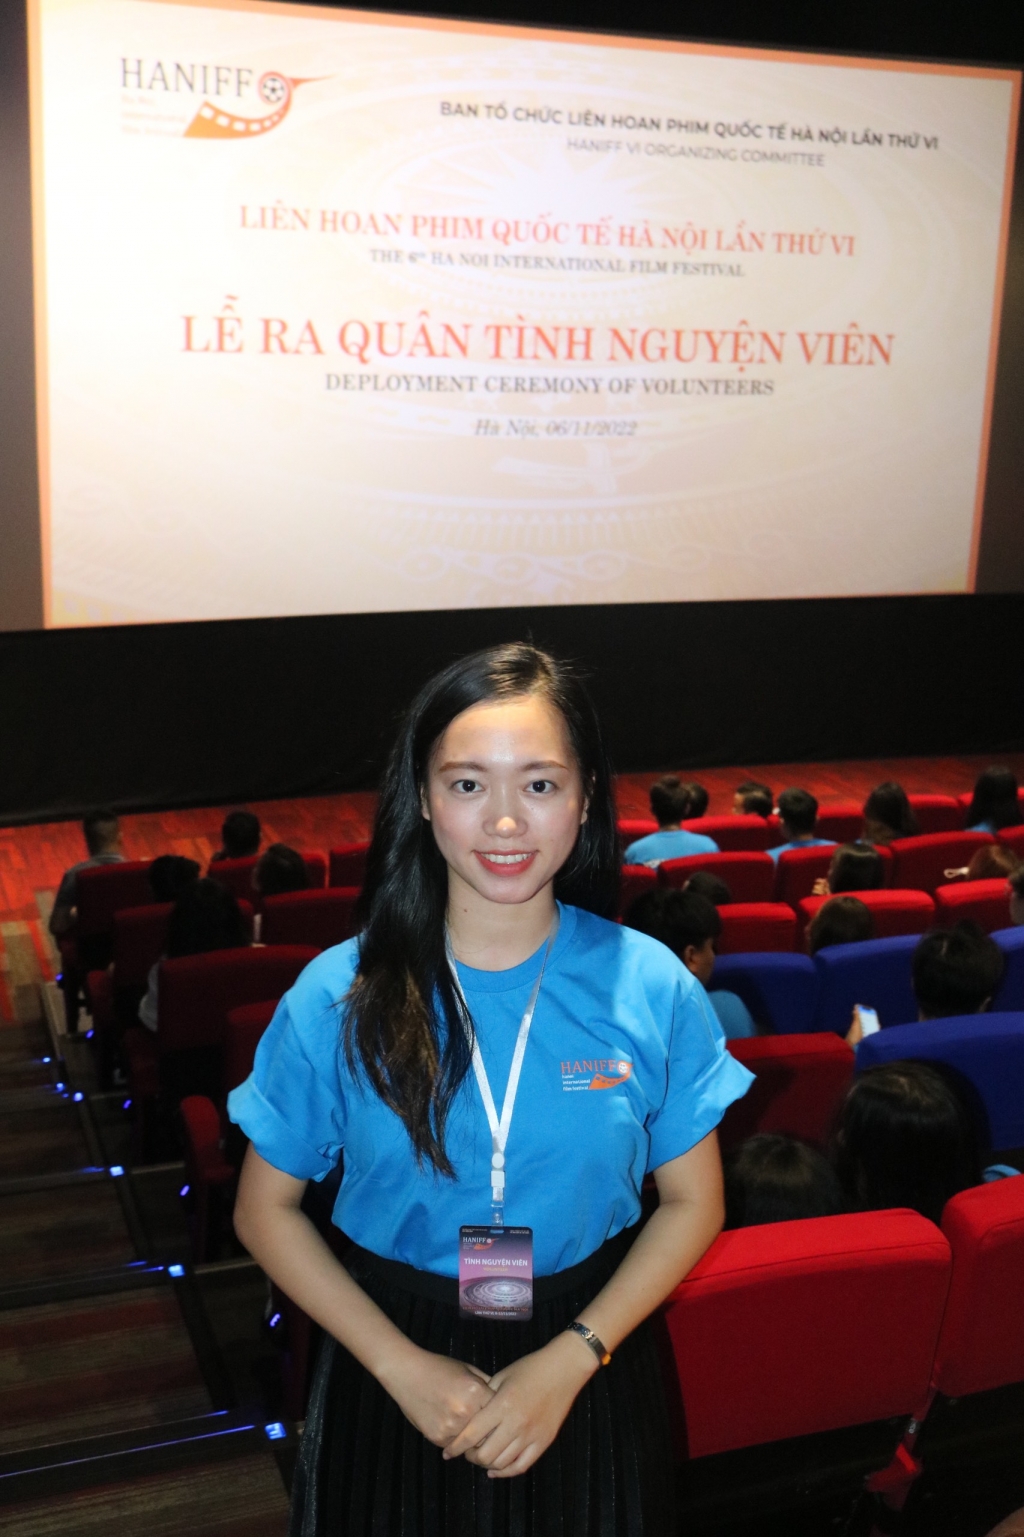 Tình nguyện viên trẻ tuổi bày tỏ háo hức trước ngày diễn ra Liên hoan phim Quốc tế Hà Nội lần thứ VI